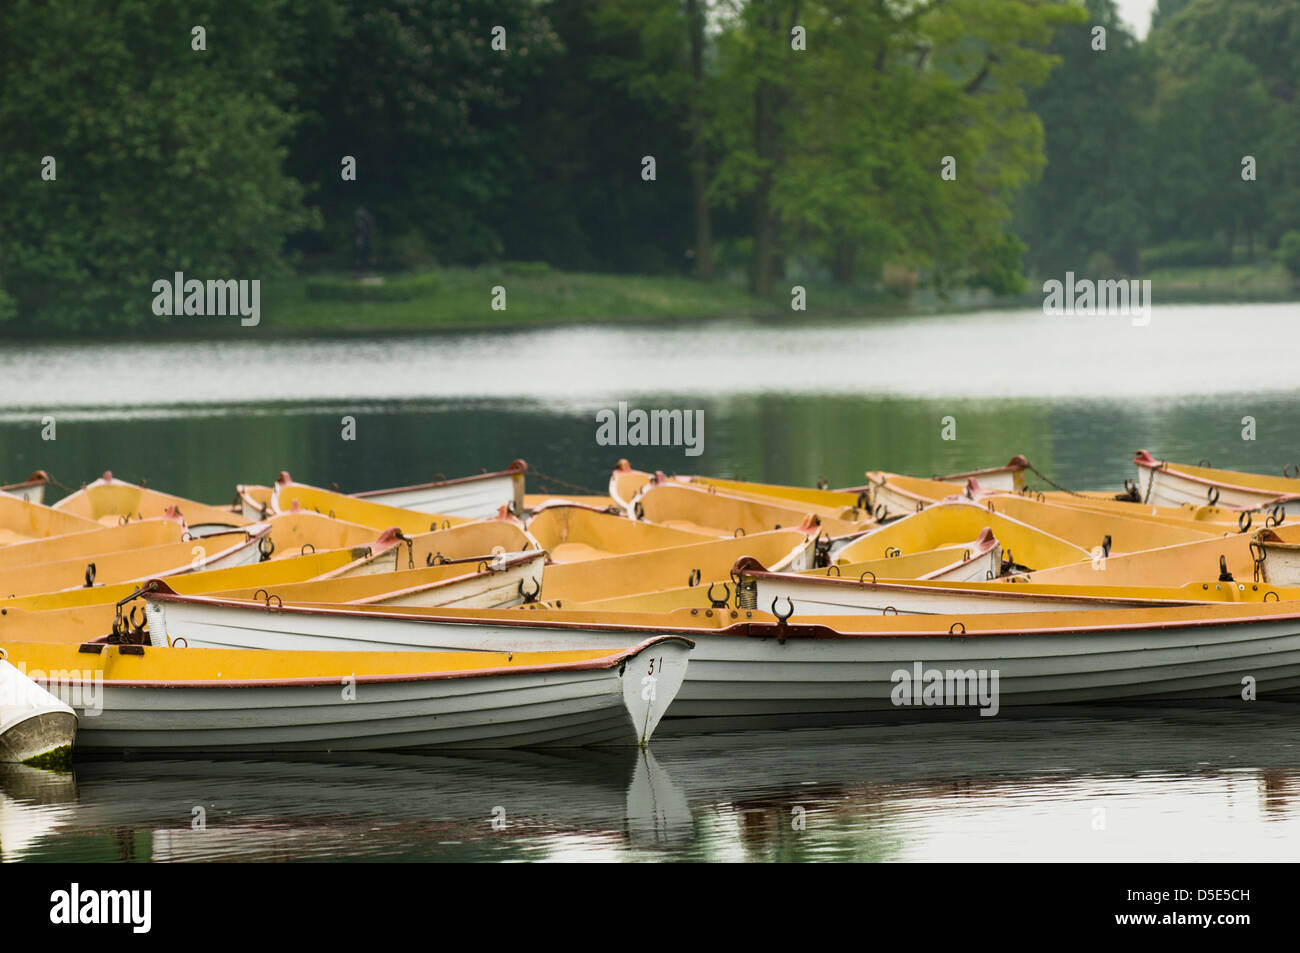 Imbarcazioni a remi su un lago del parco di Bois de Boulogne, Parigi, Francia Foto Stock